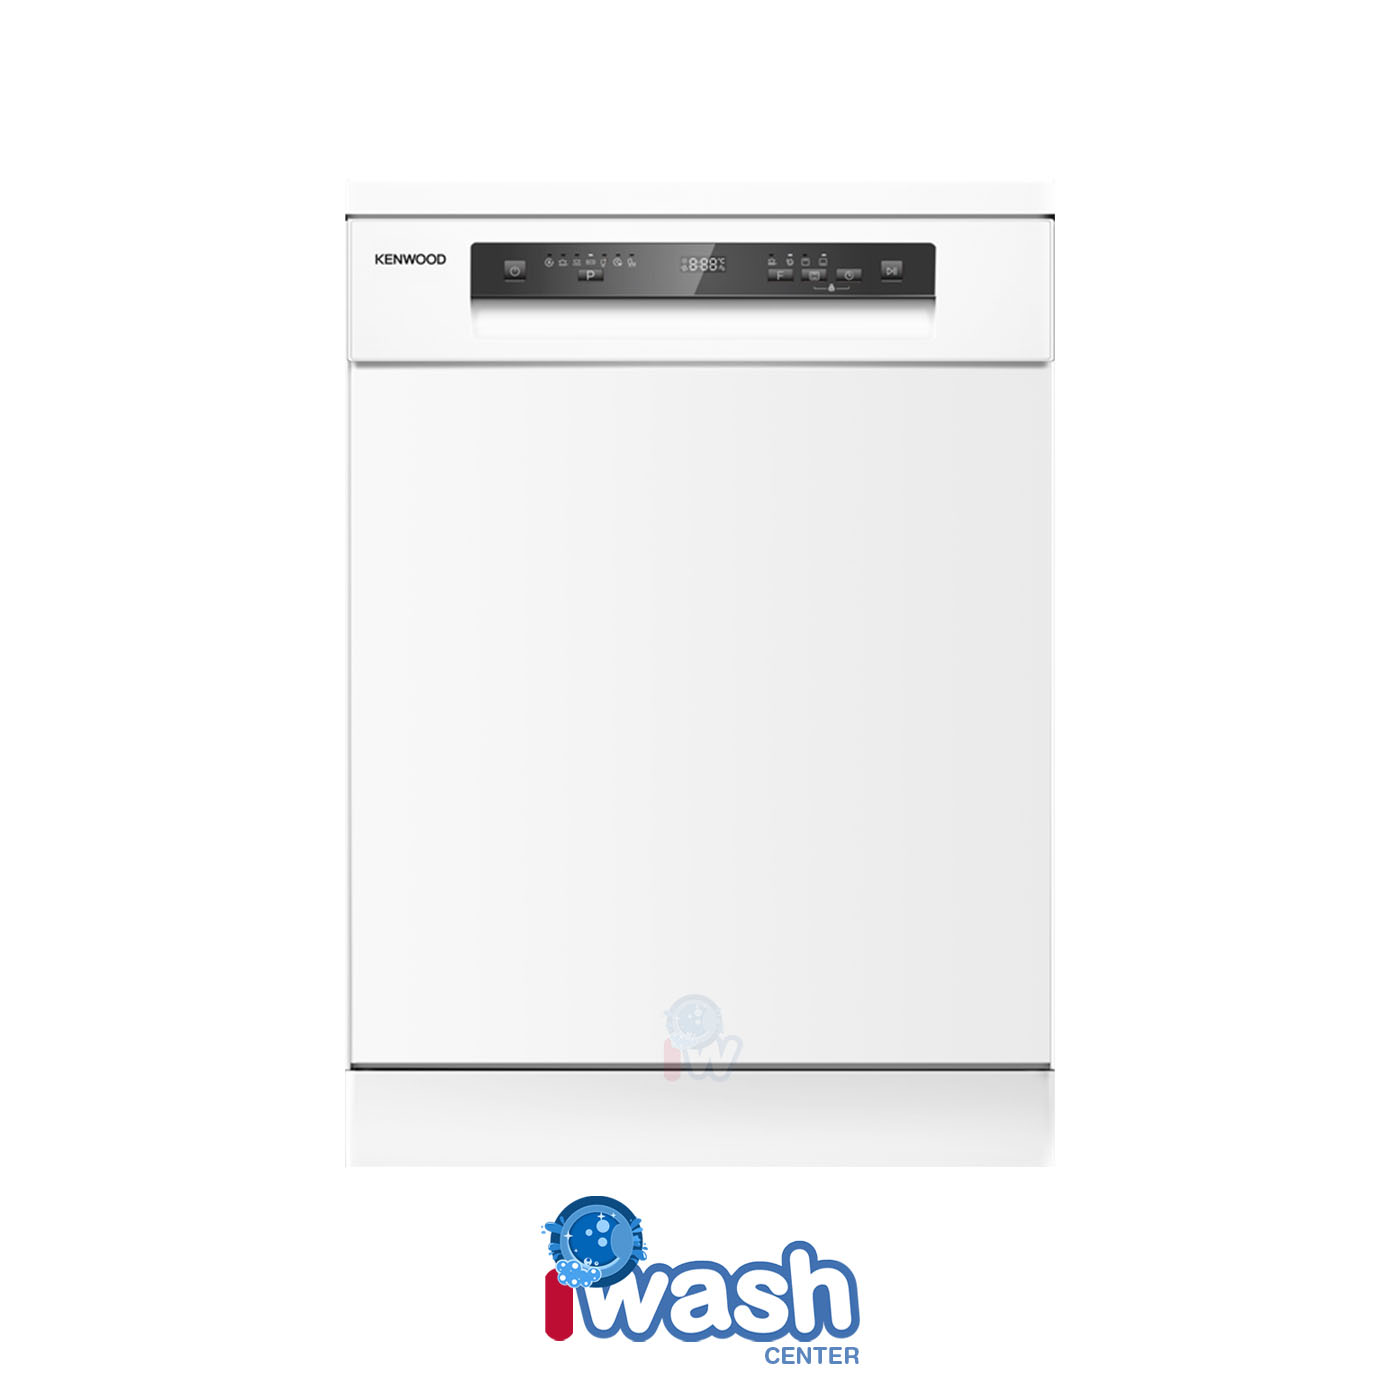 ماشین ظرفشویی 14 نفره کنوود مدل KD-430W سفید